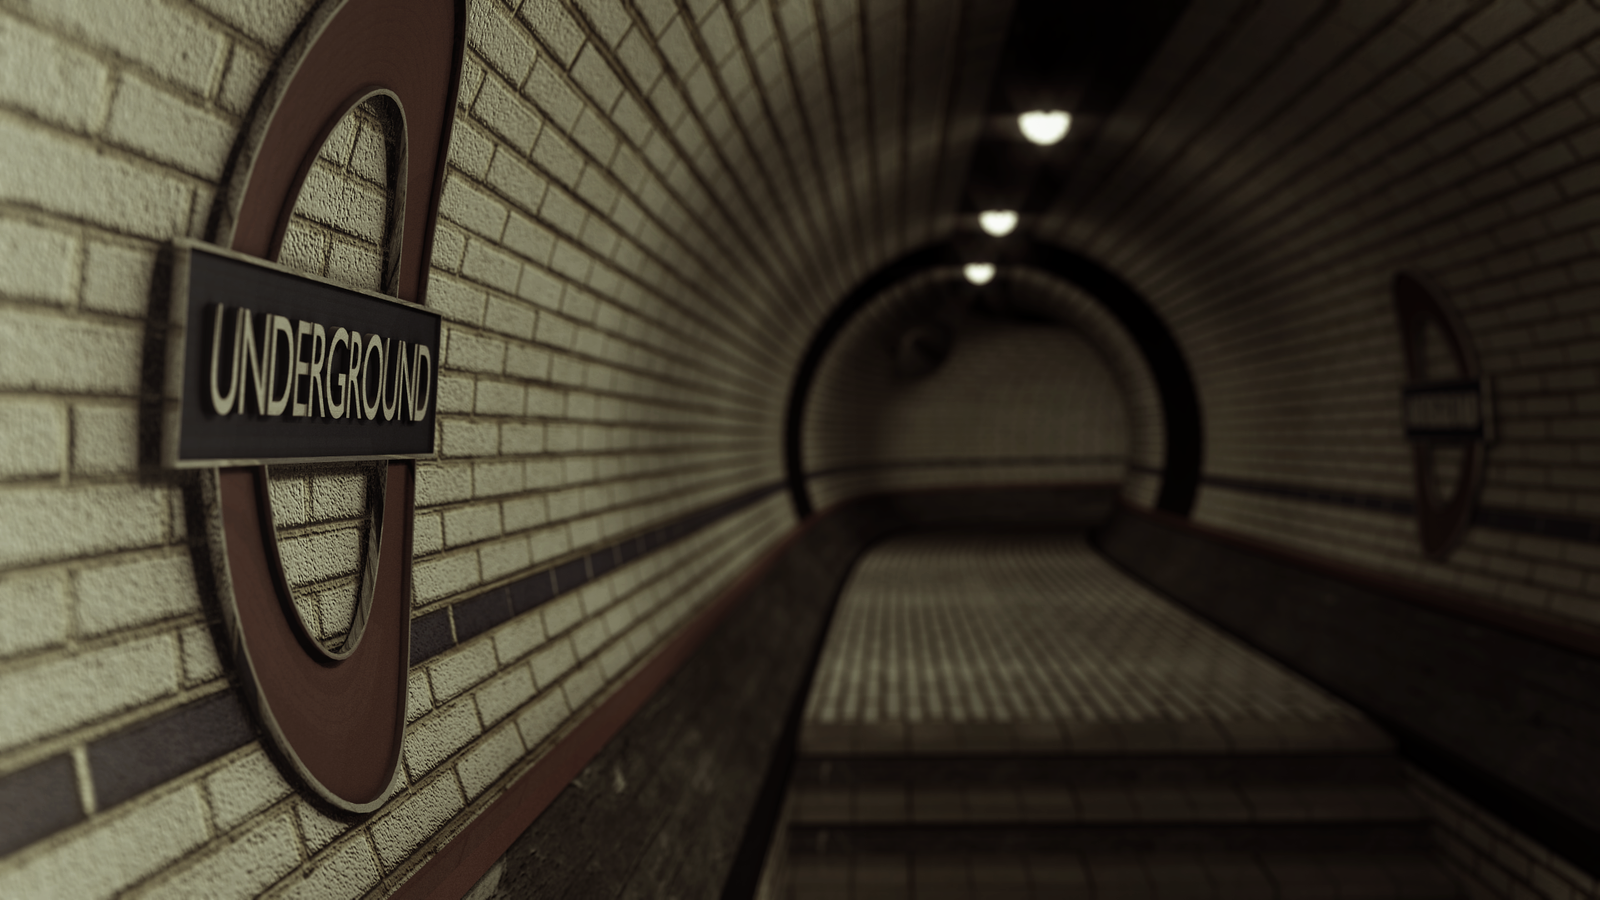 Андеграунд тг. Лондон метро Underground HD. Underground стиль. Фотоандеграунд. Ангарвунд.